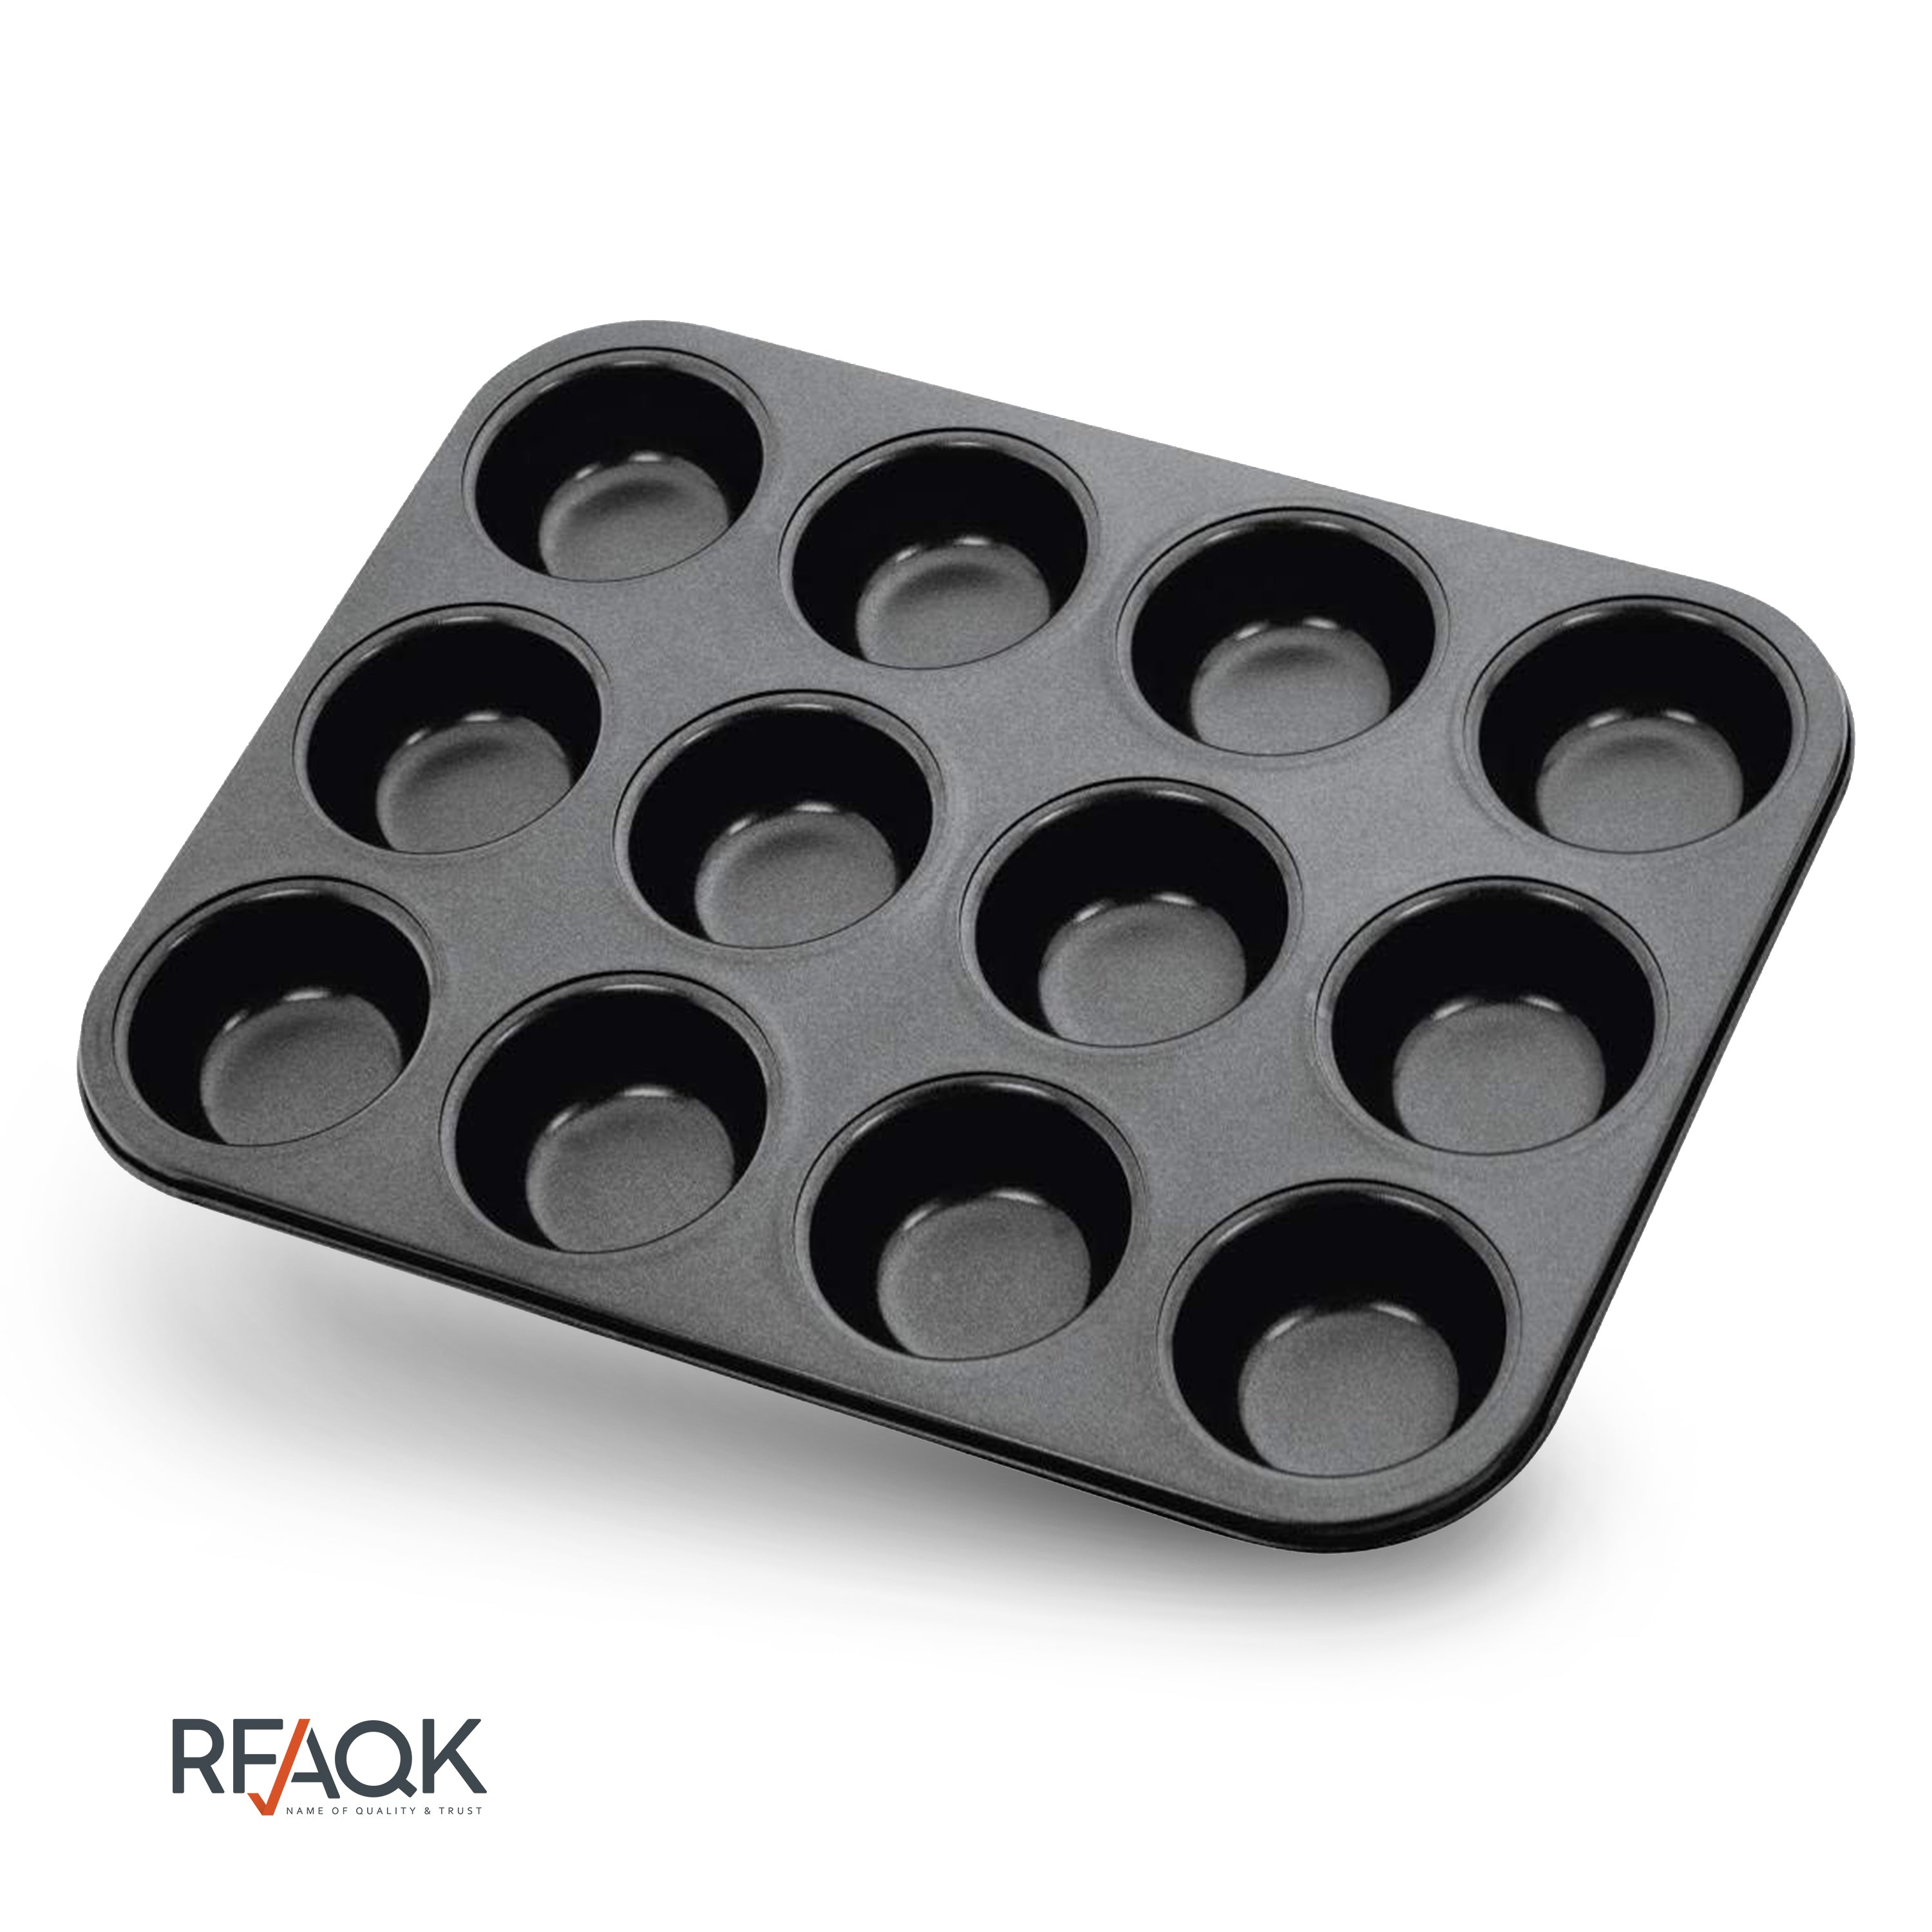 RFAQK 6,8,10 Inch Springform Cake Pan -Round Nonstick Baking Set